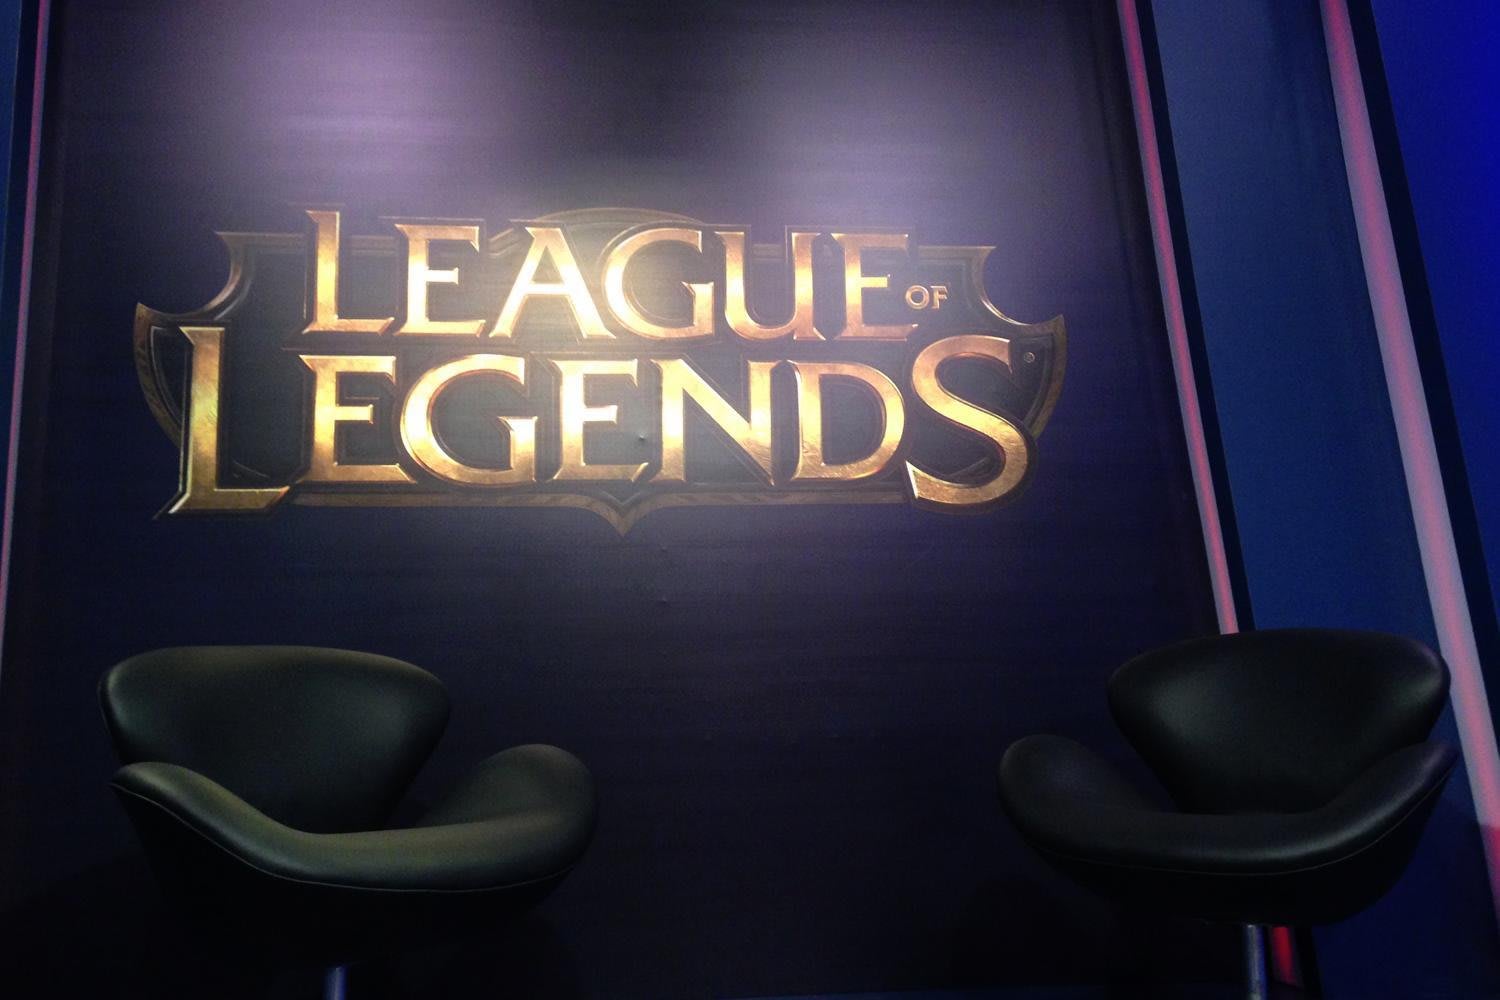 League of Legends domina o jogo em 2015